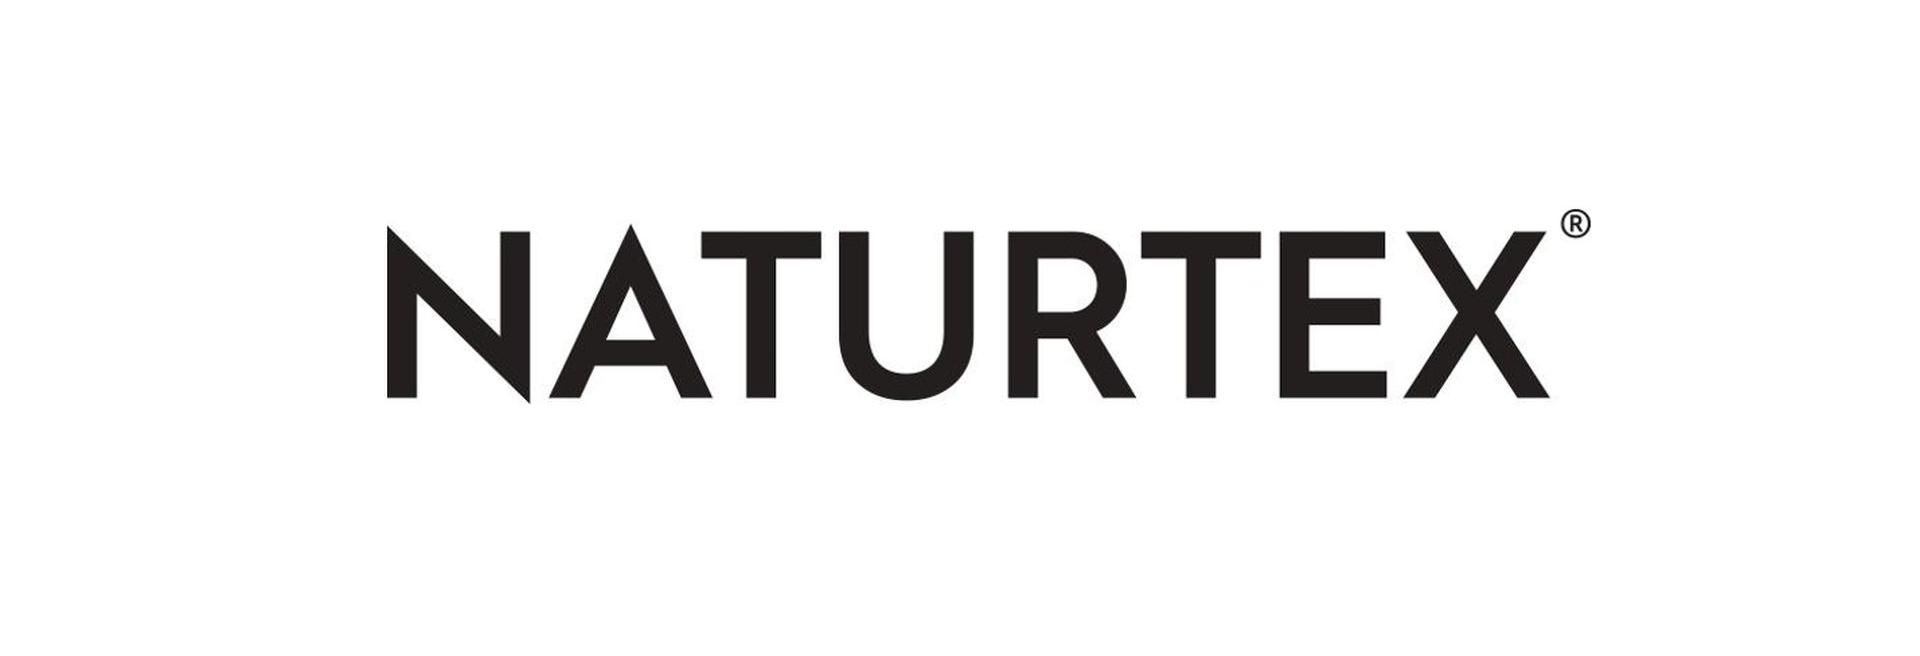 A Naturtex 40 százalékkal bővítette gyártókapacitását Szegeden - VIDEÓ RIPORT